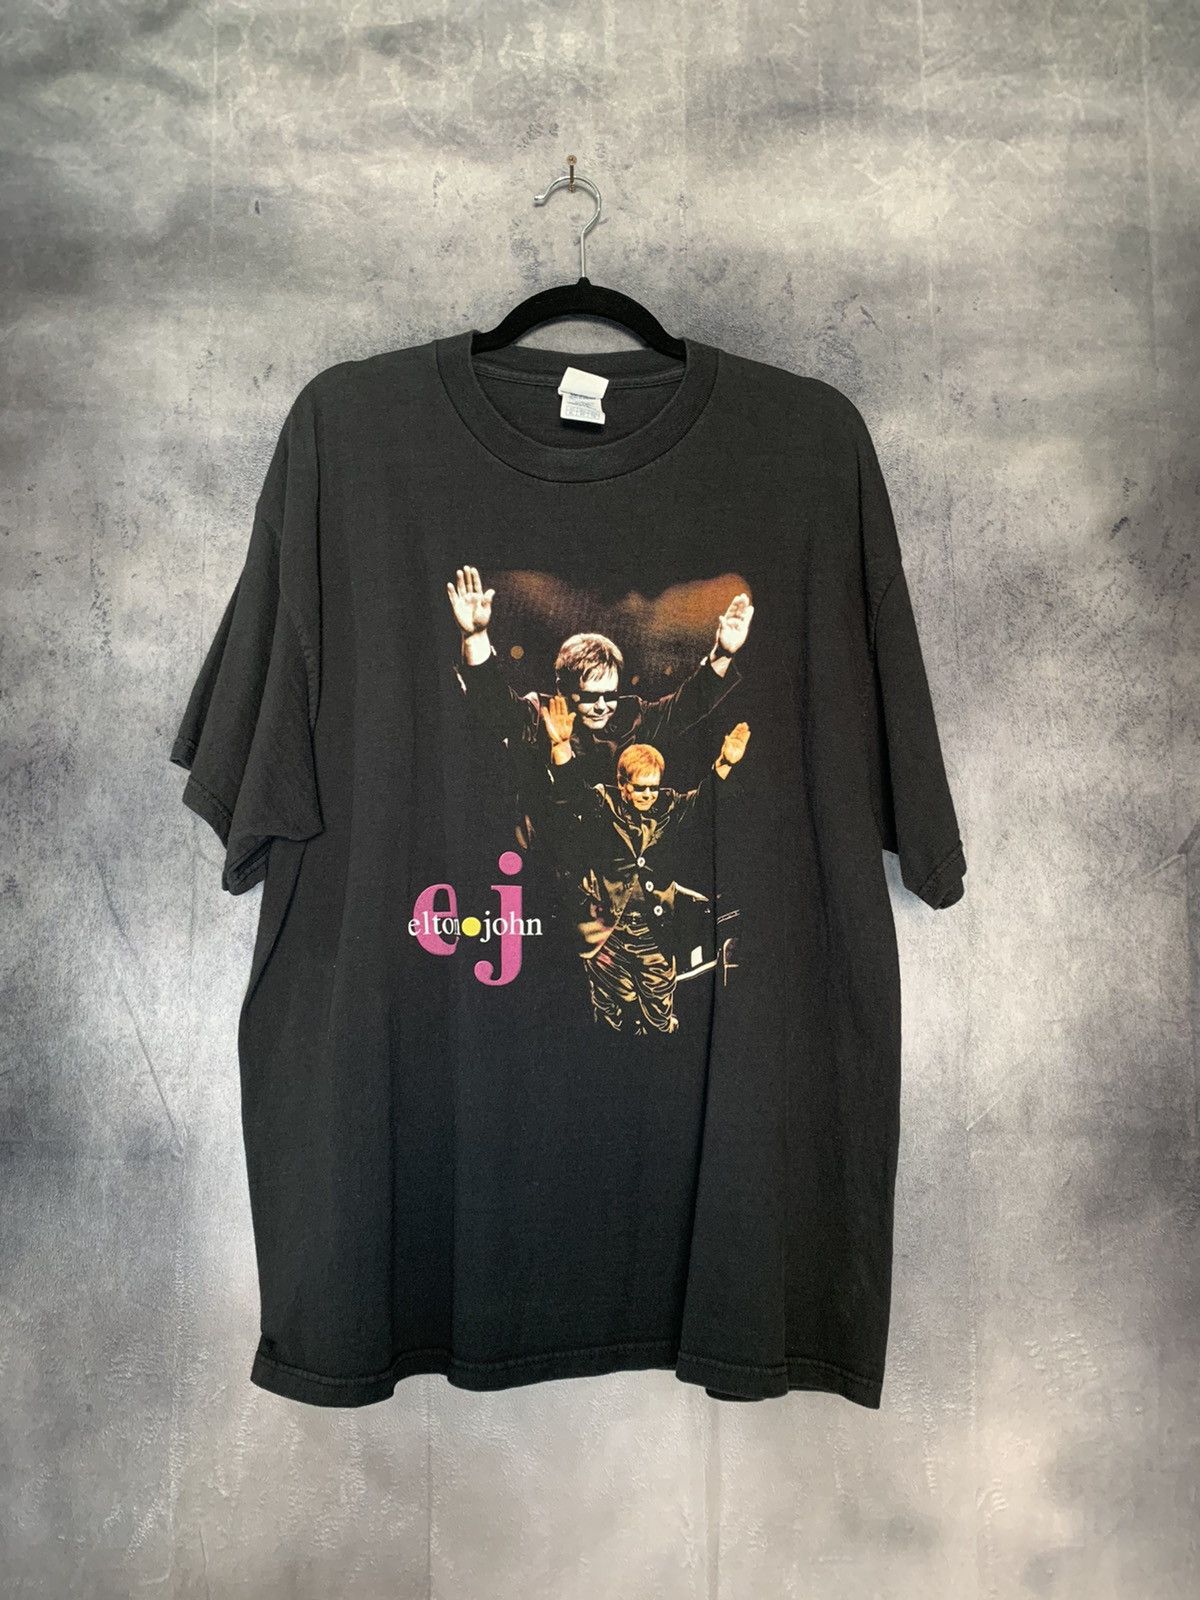 Tour Tee Elton John Graphic Tour Tshirt Size US XL / EU 56 / 4 - 1 Preview